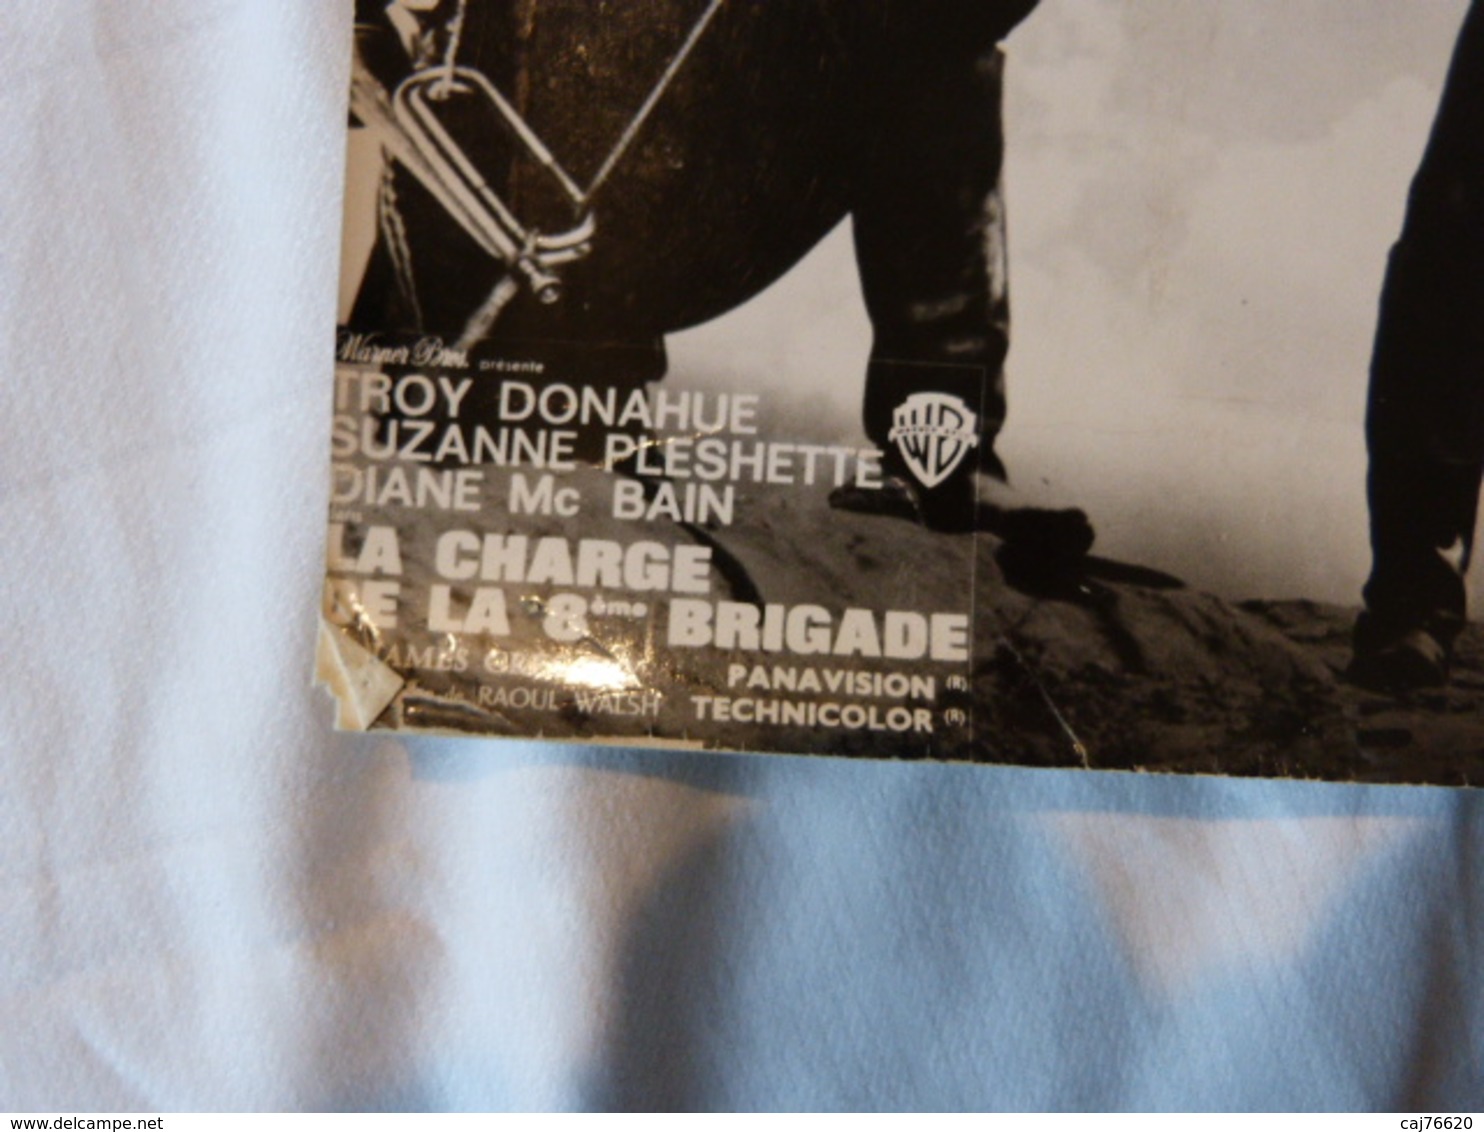 Le Charge De La 8eme Brigade , Troy Donahue, Suzanne Pleshette, Diane Mc Bain - Célébrités